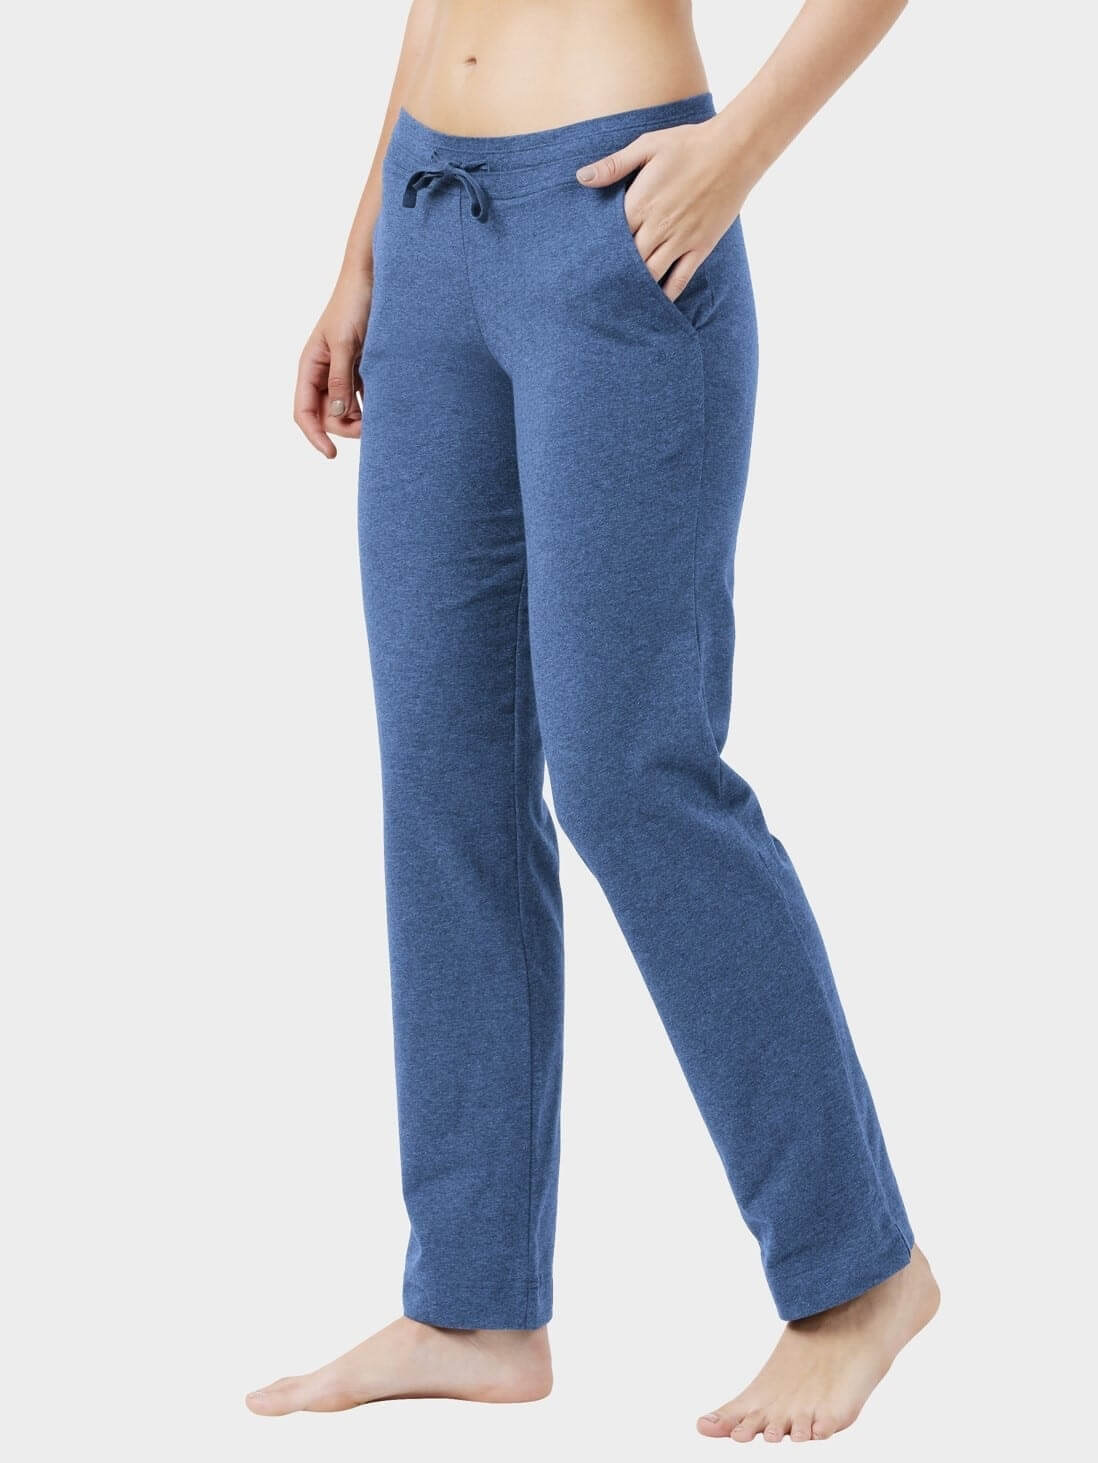 Denim Blue Track Pant | Pants, Blue denim, Clothes design